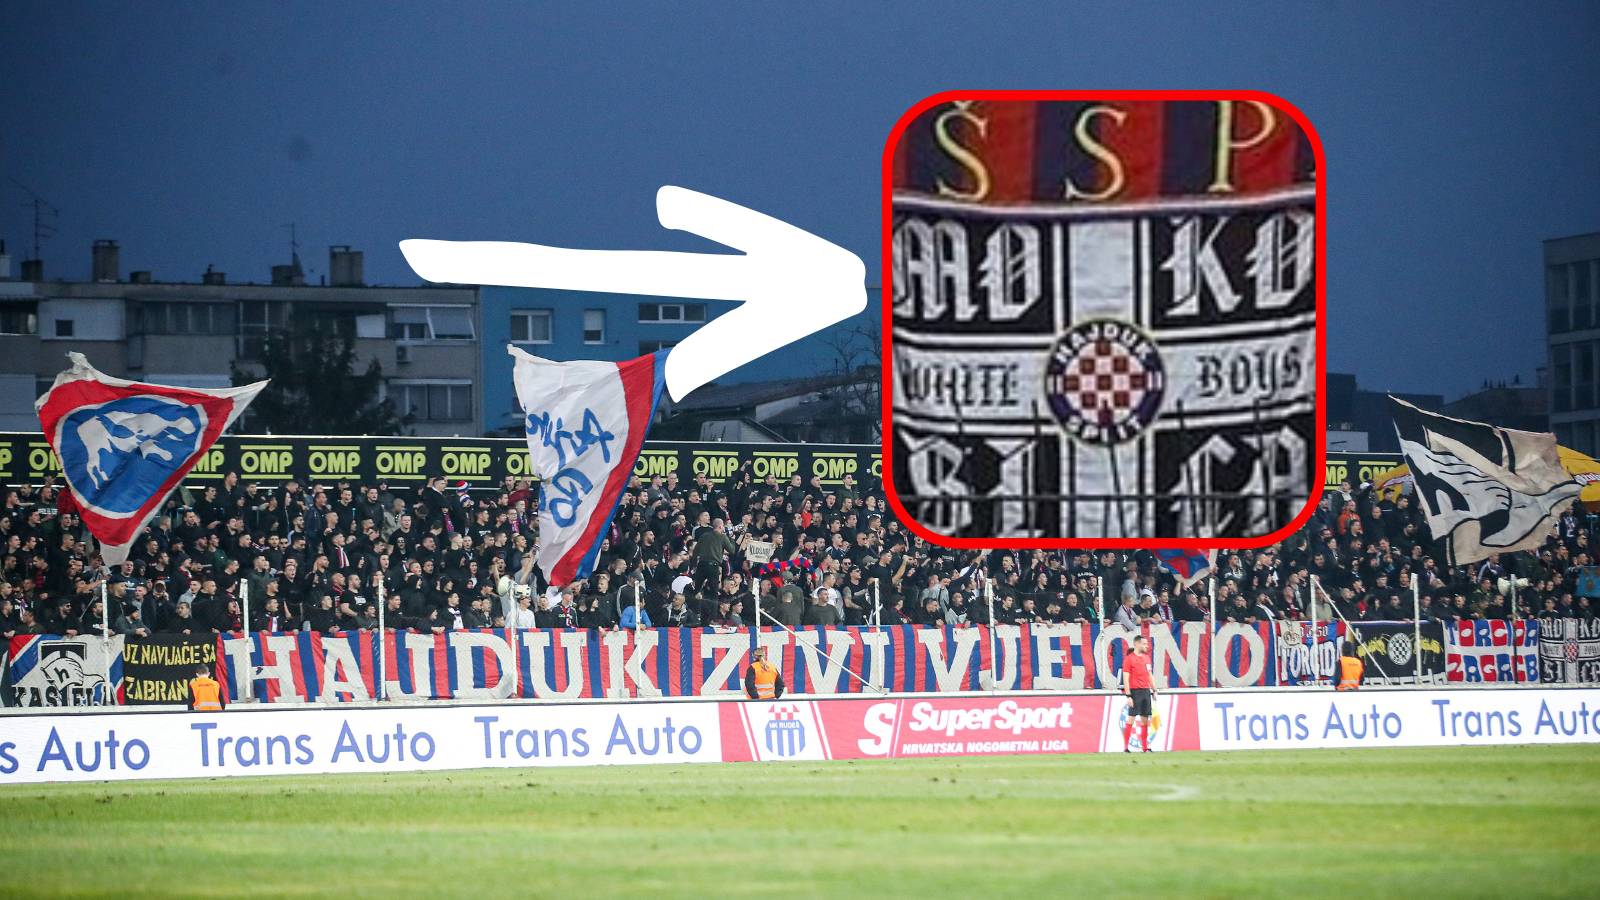 Utrčavanje u teren, bakljada i ovaj transparent: Evo zašto je Hajduk dobio najveću kaznu